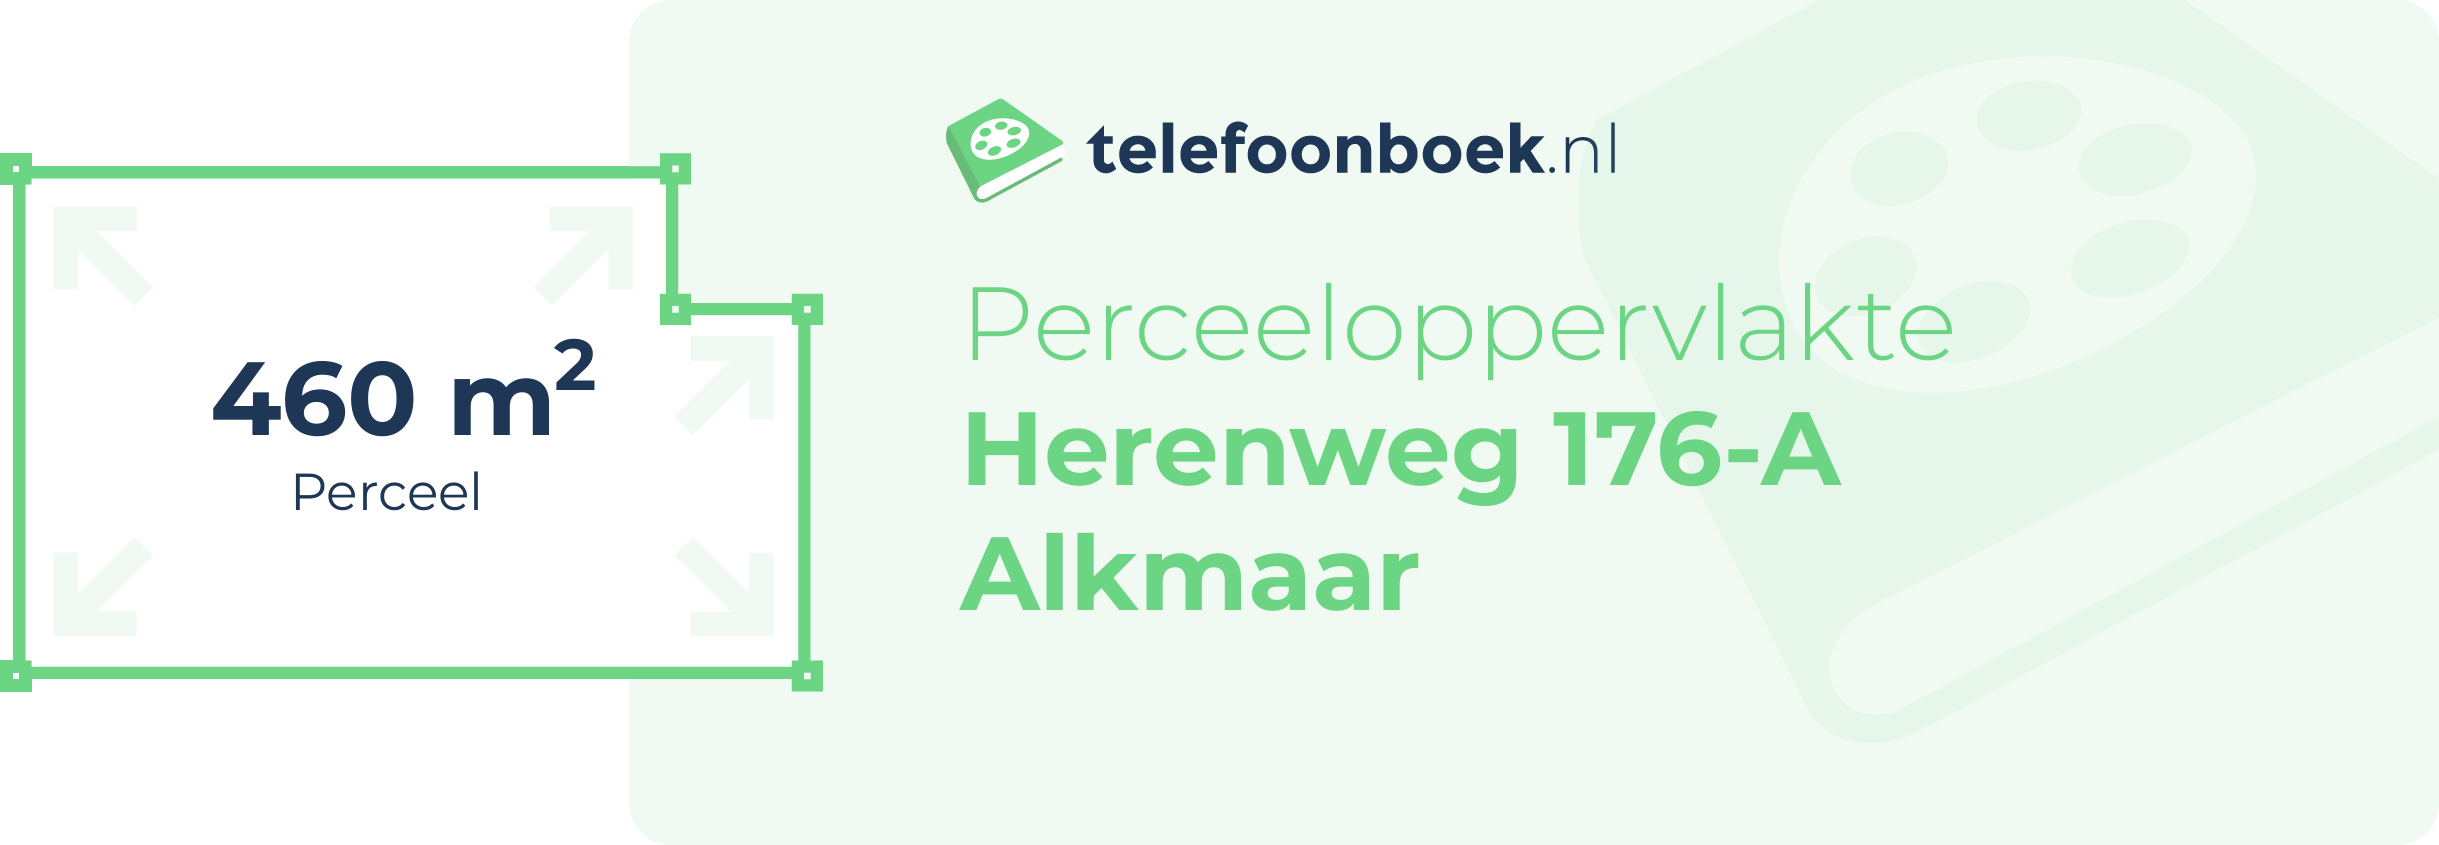 Perceeloppervlakte Herenweg 176-A Alkmaar